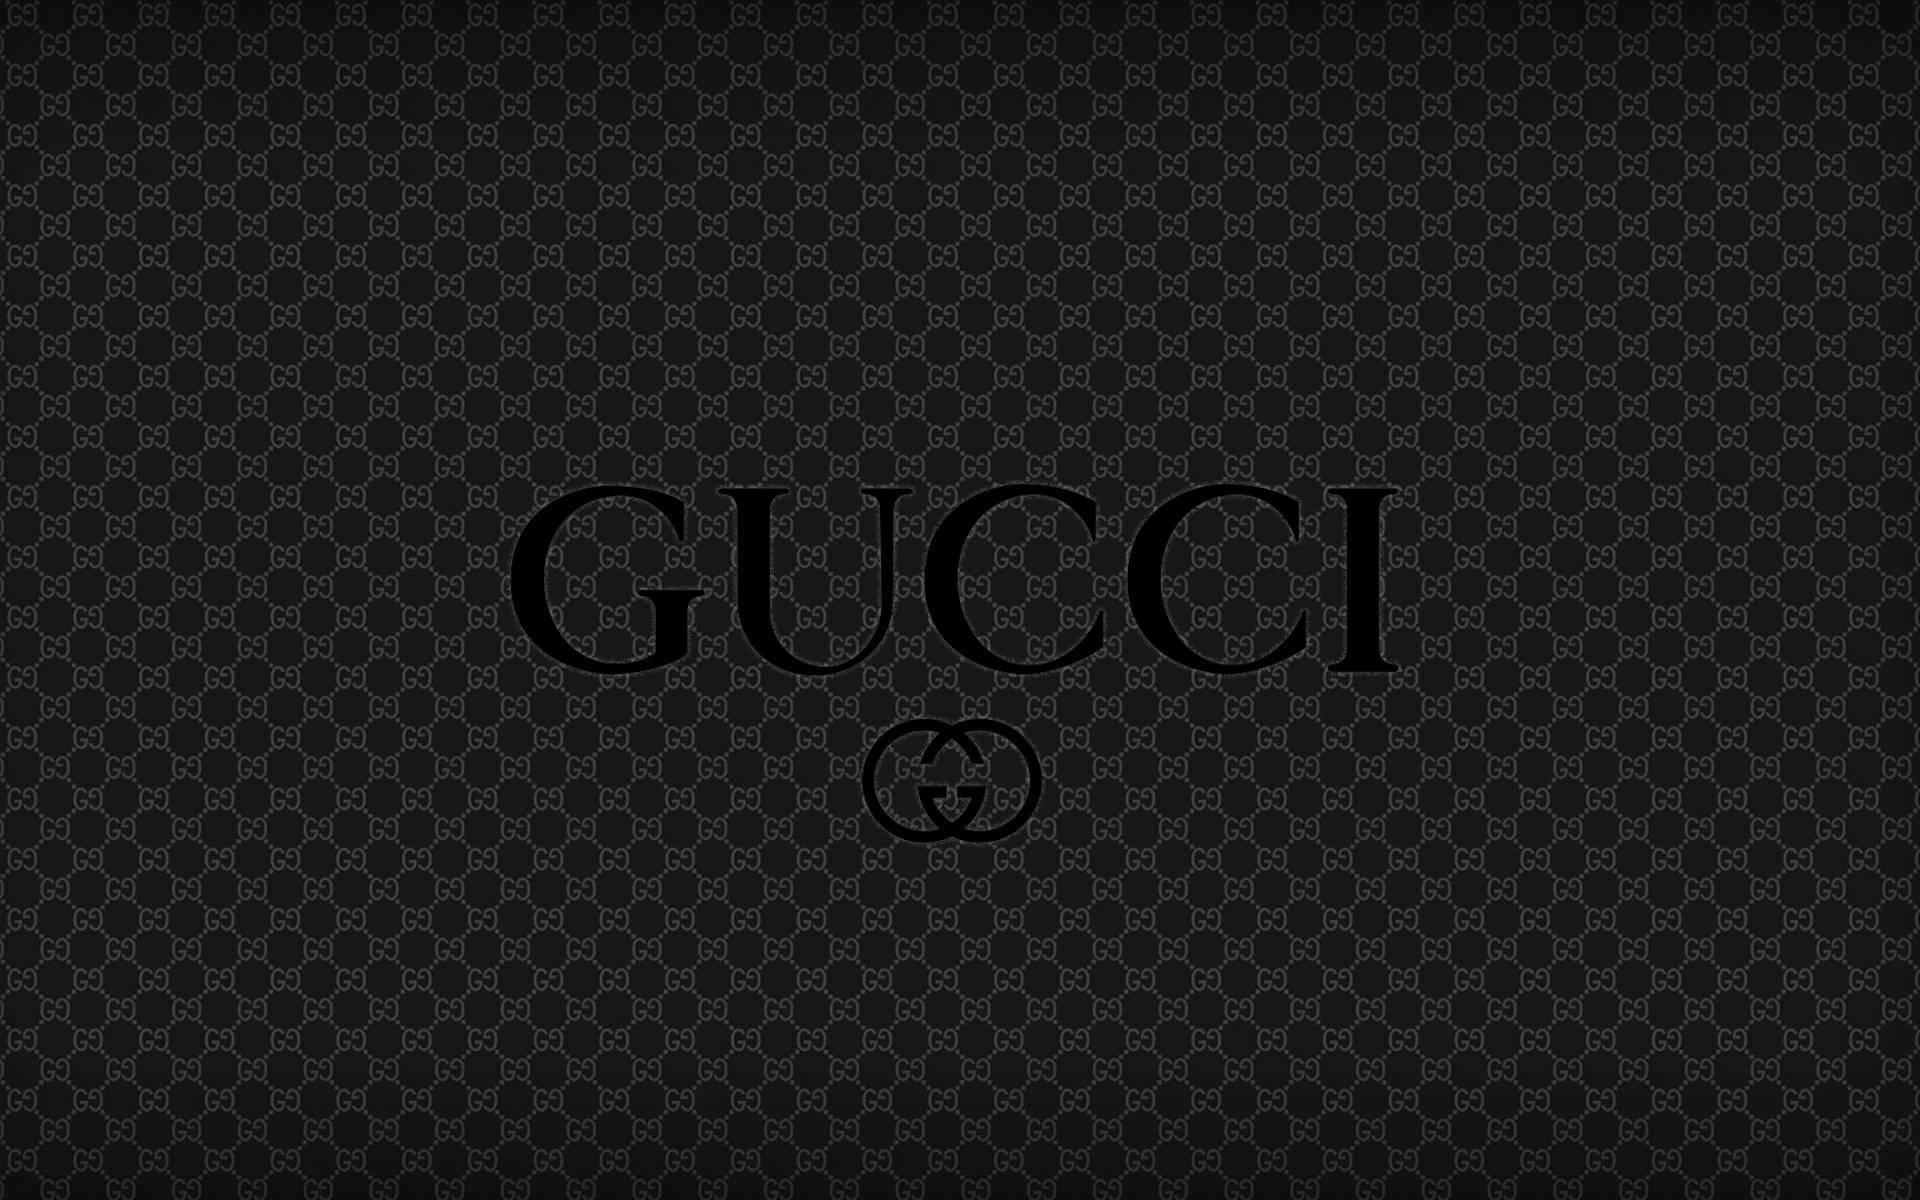 Patrónoscuro De Estética Gucci Fondo de pantalla